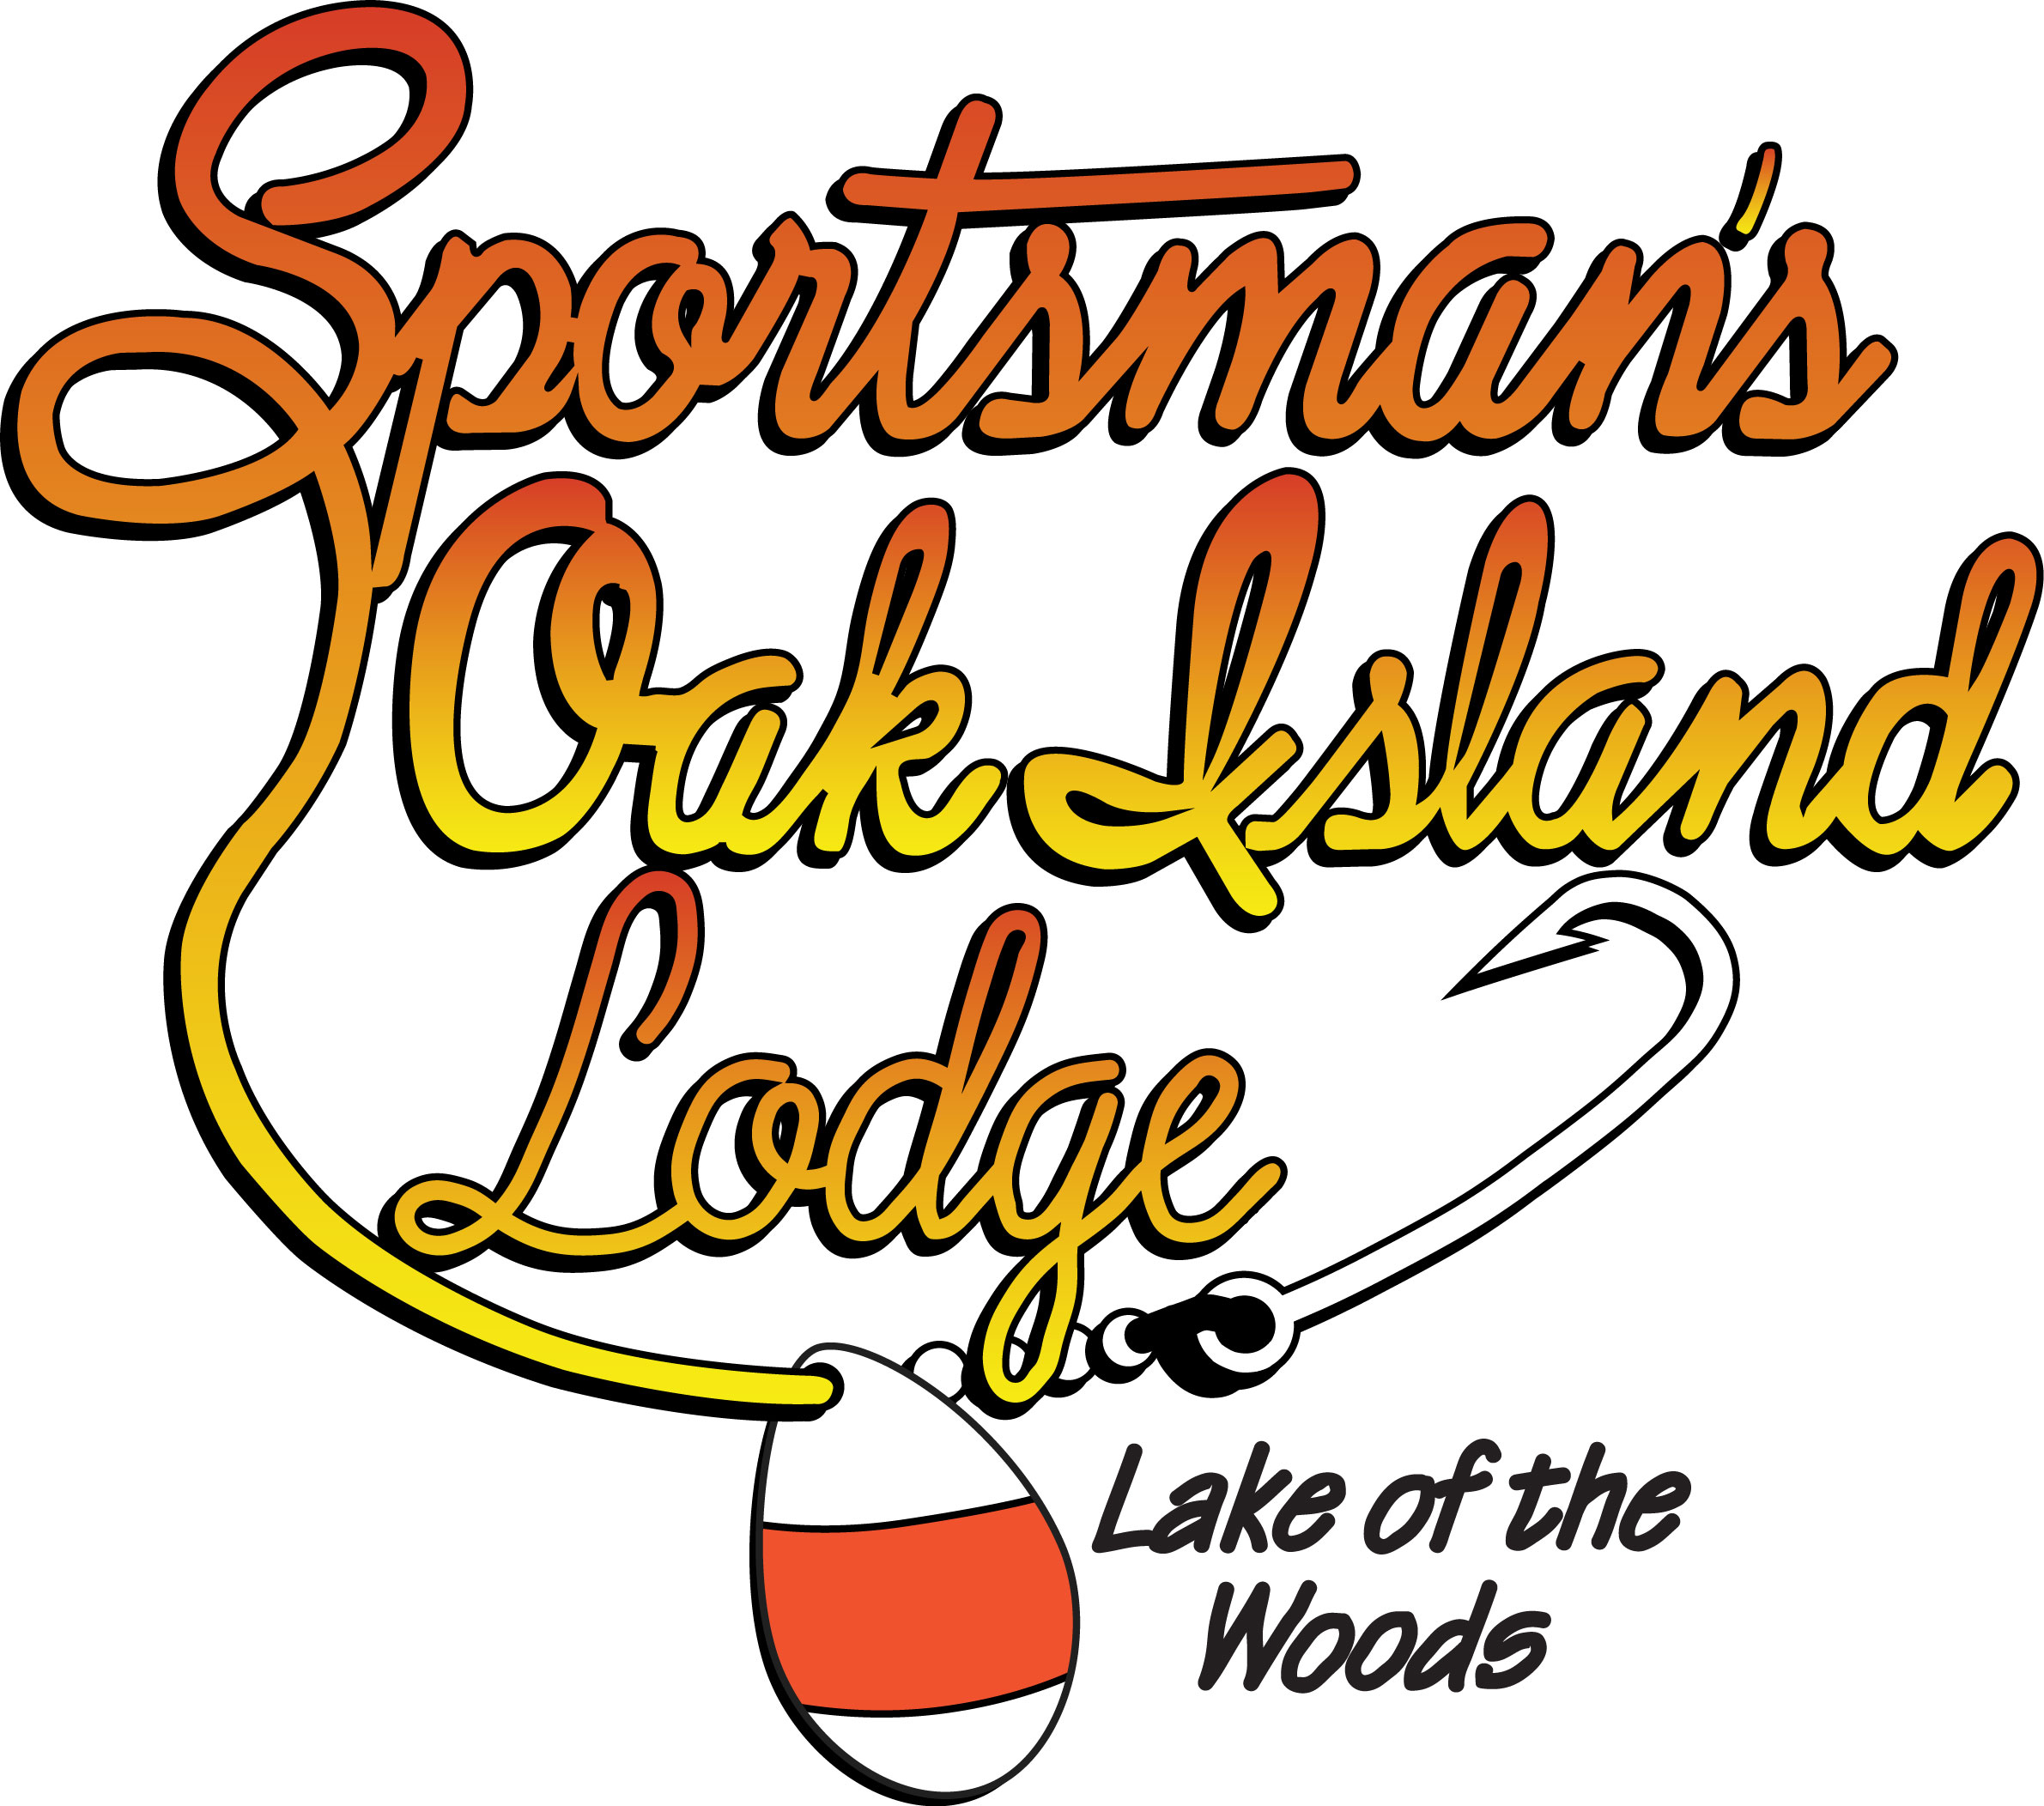 Sportsman's Oak Island